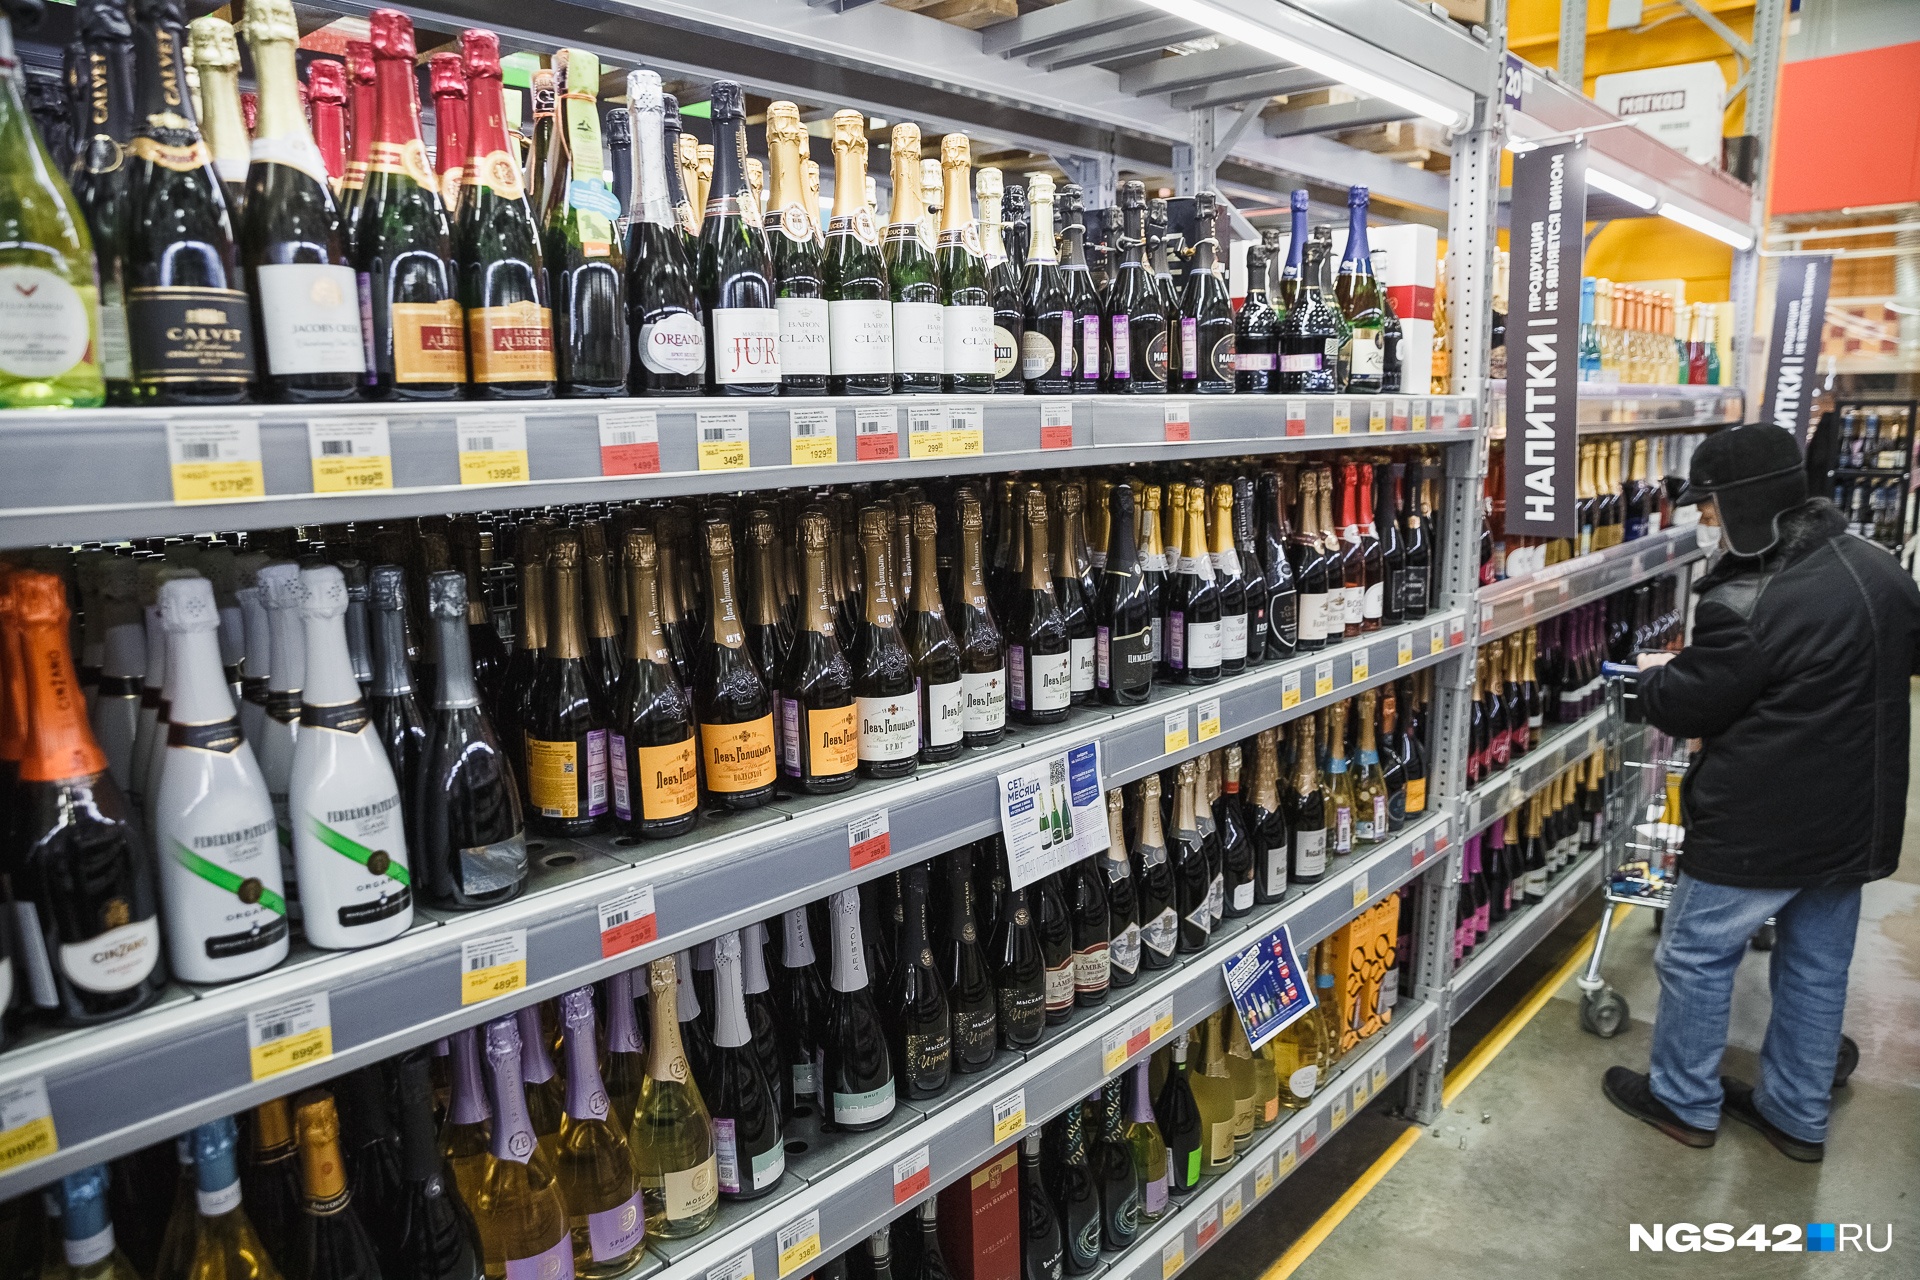 Власти Кузбасса рассказали, в какие дни будет запрещена продажа алкоголя. Публикуем календарь